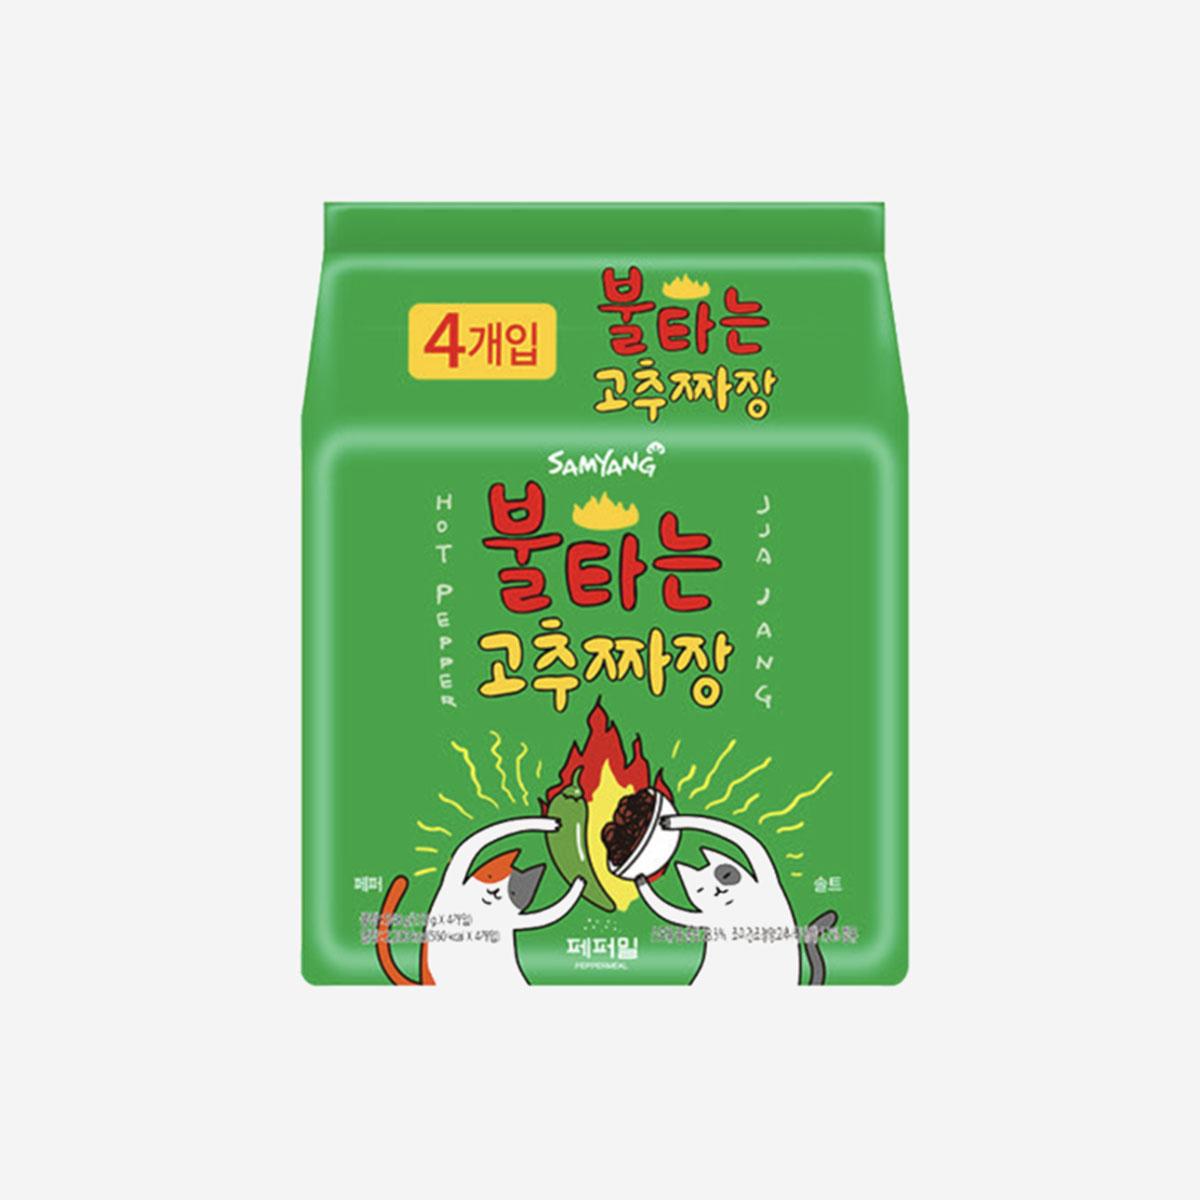 Hot pepper jjajang | Mì tương đen trộn ớt cay Hàn Quốc (4 gói)